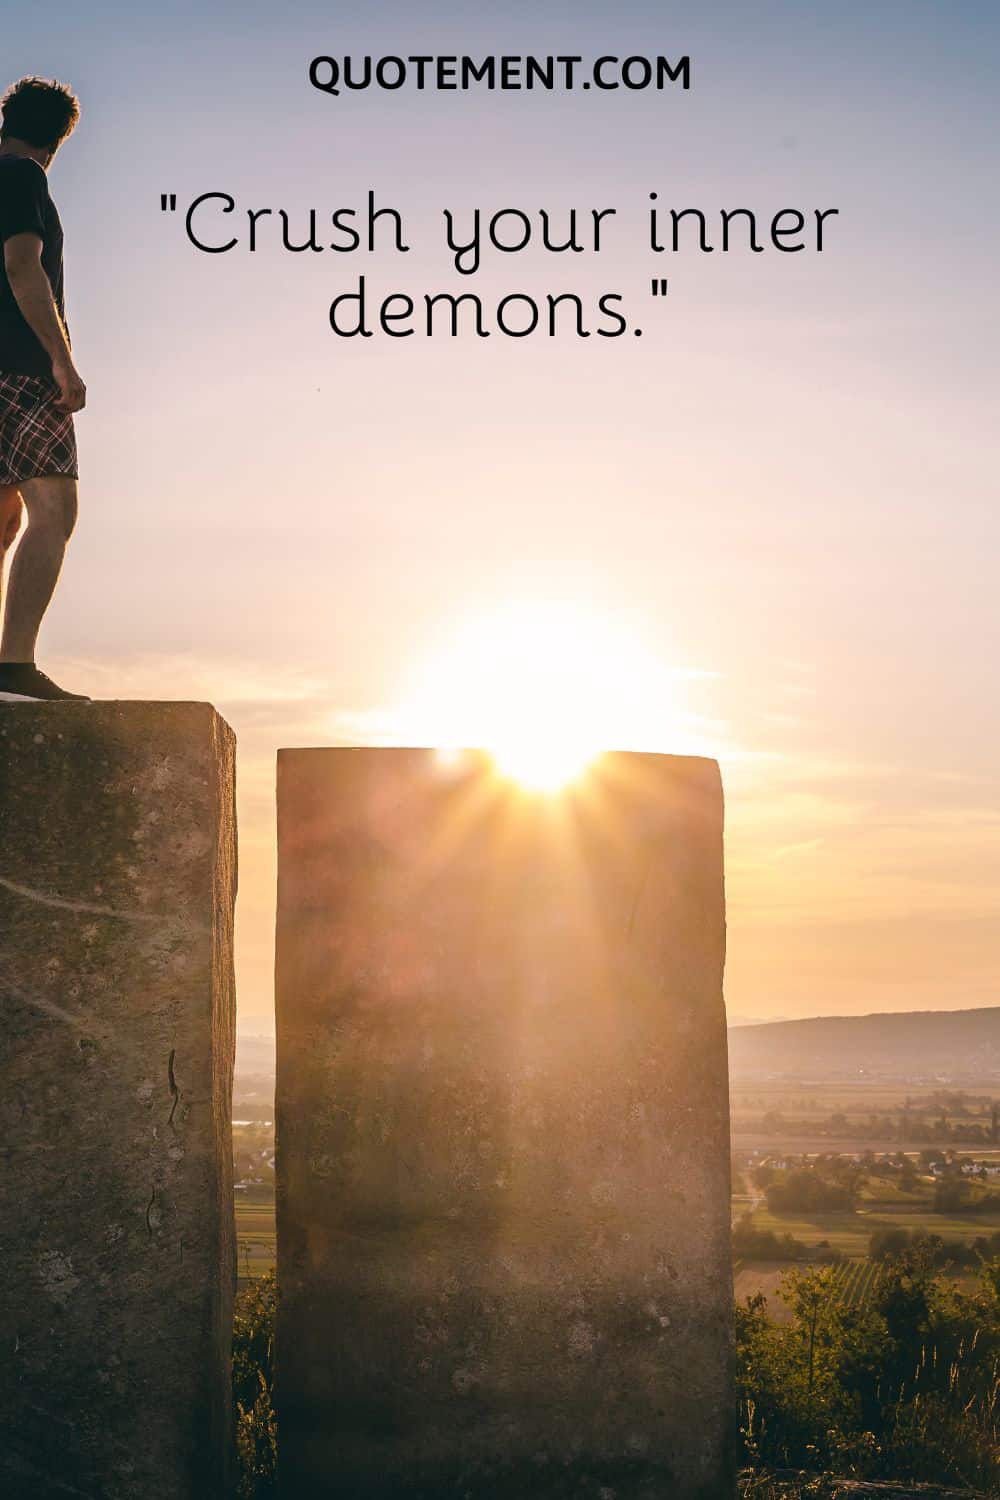 Crush your inner demons.